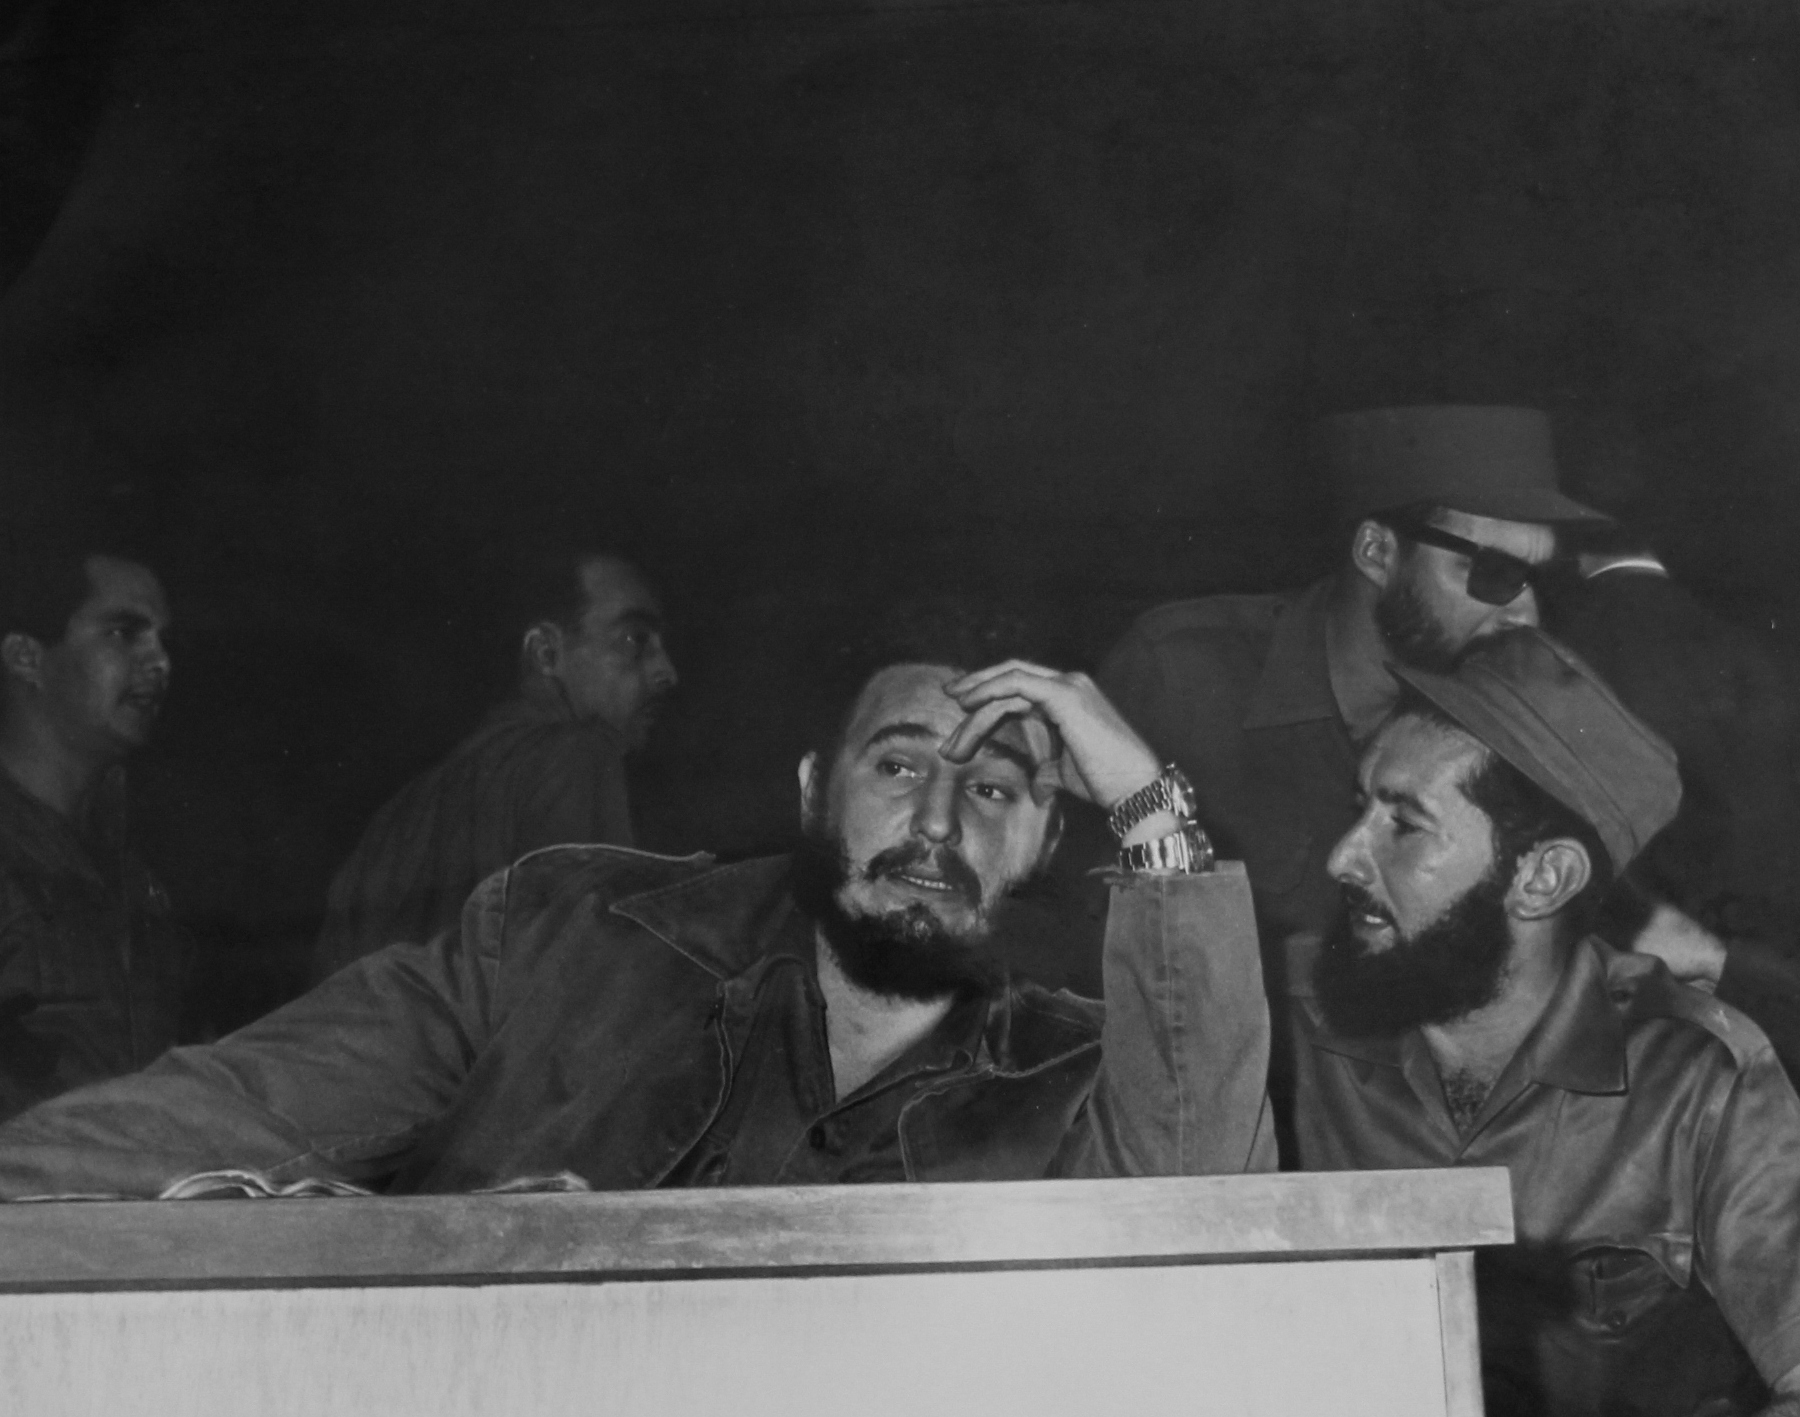 José Amador, Dr. Fidel Castro, 1960
Vintage gelatin silver print, ferrotyped
17 x 24 cm
